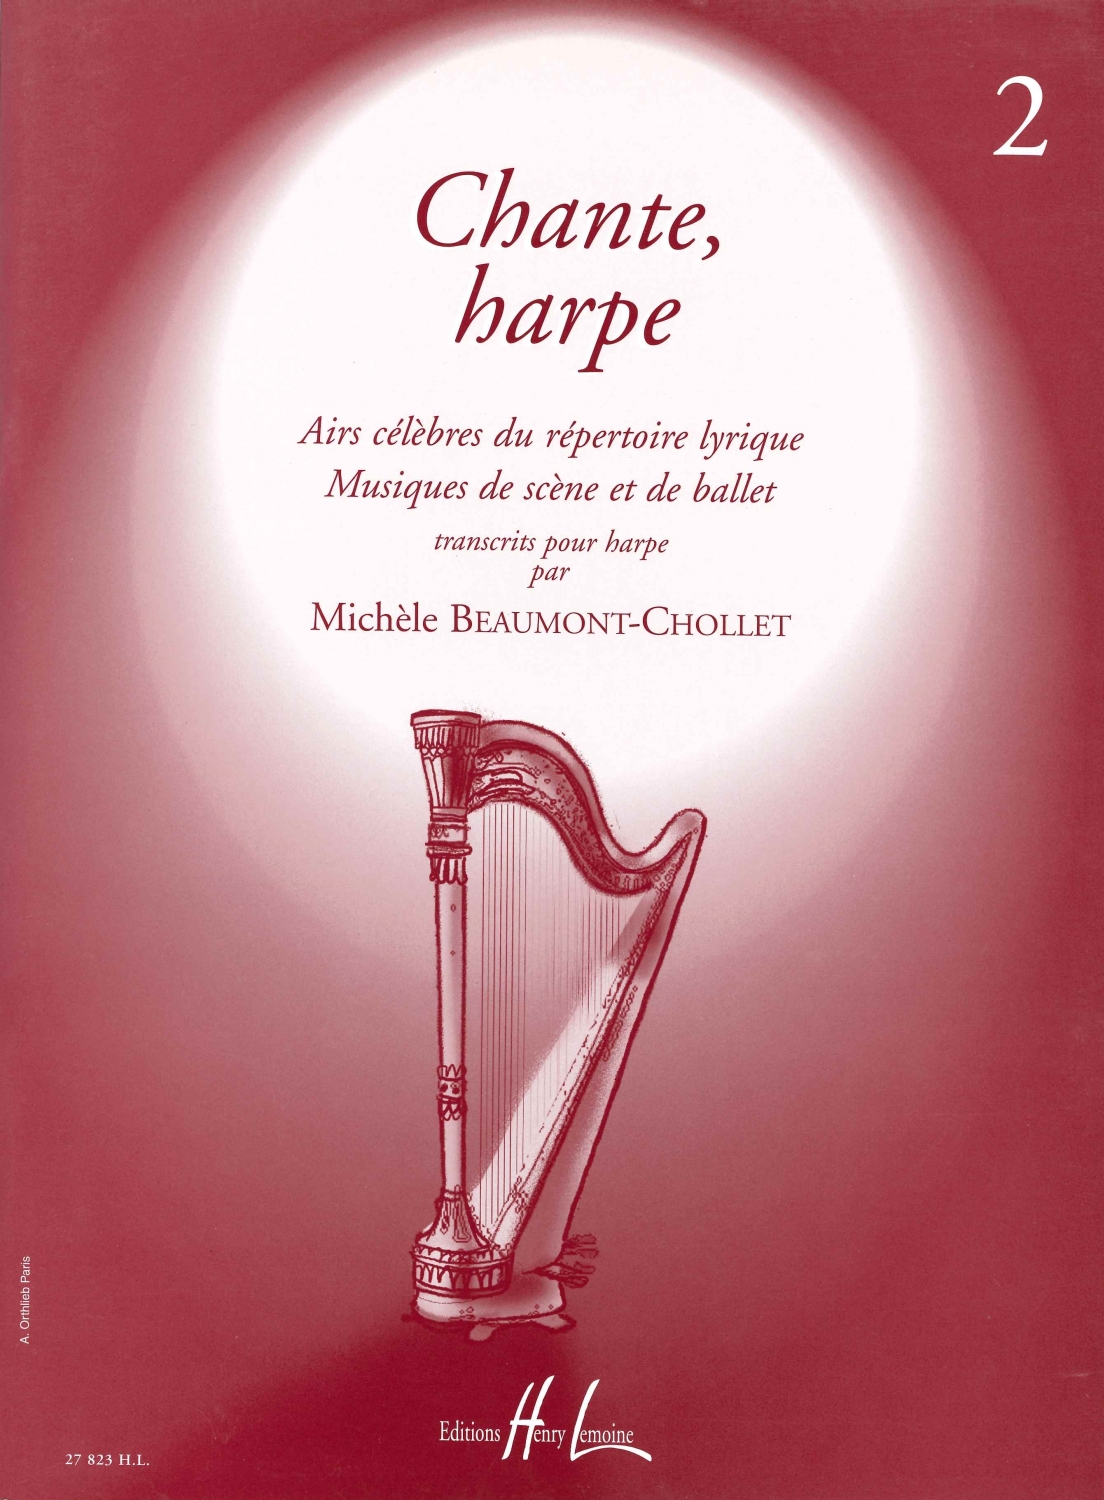 chante-harpe-vol-2-hp-_0001.JPG